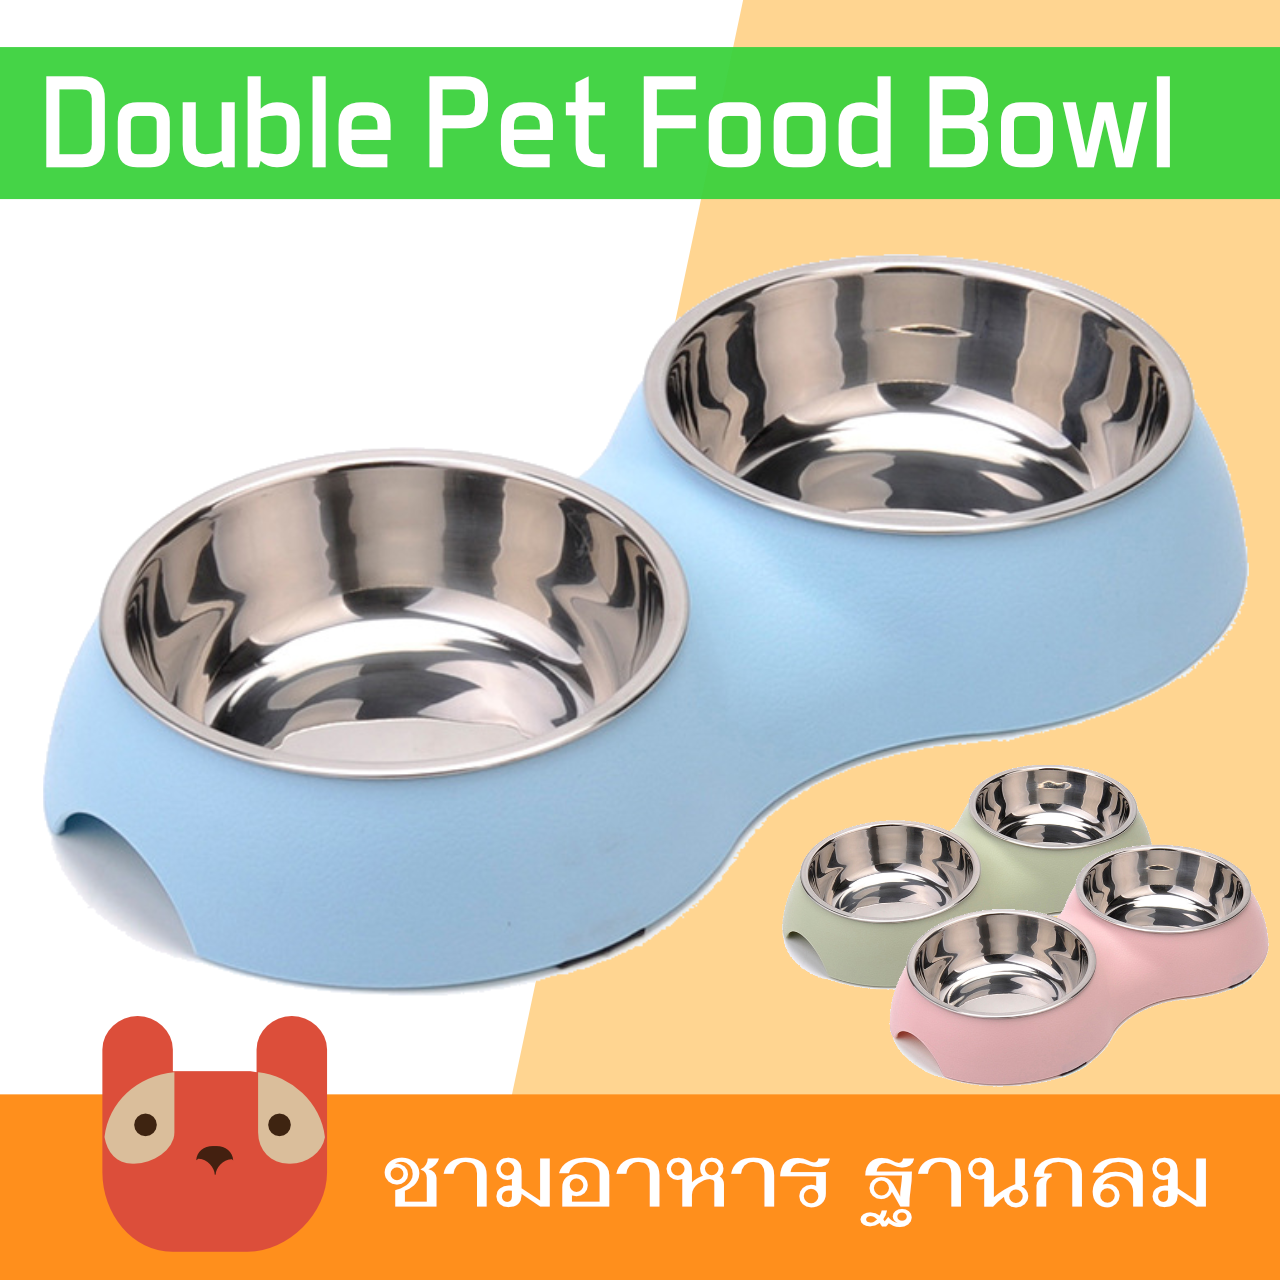 ชามอาหารสัตว์เลี้ยง ชามอาหารสุนัข ชามอาหารแมว ฐานกลม (BO907)